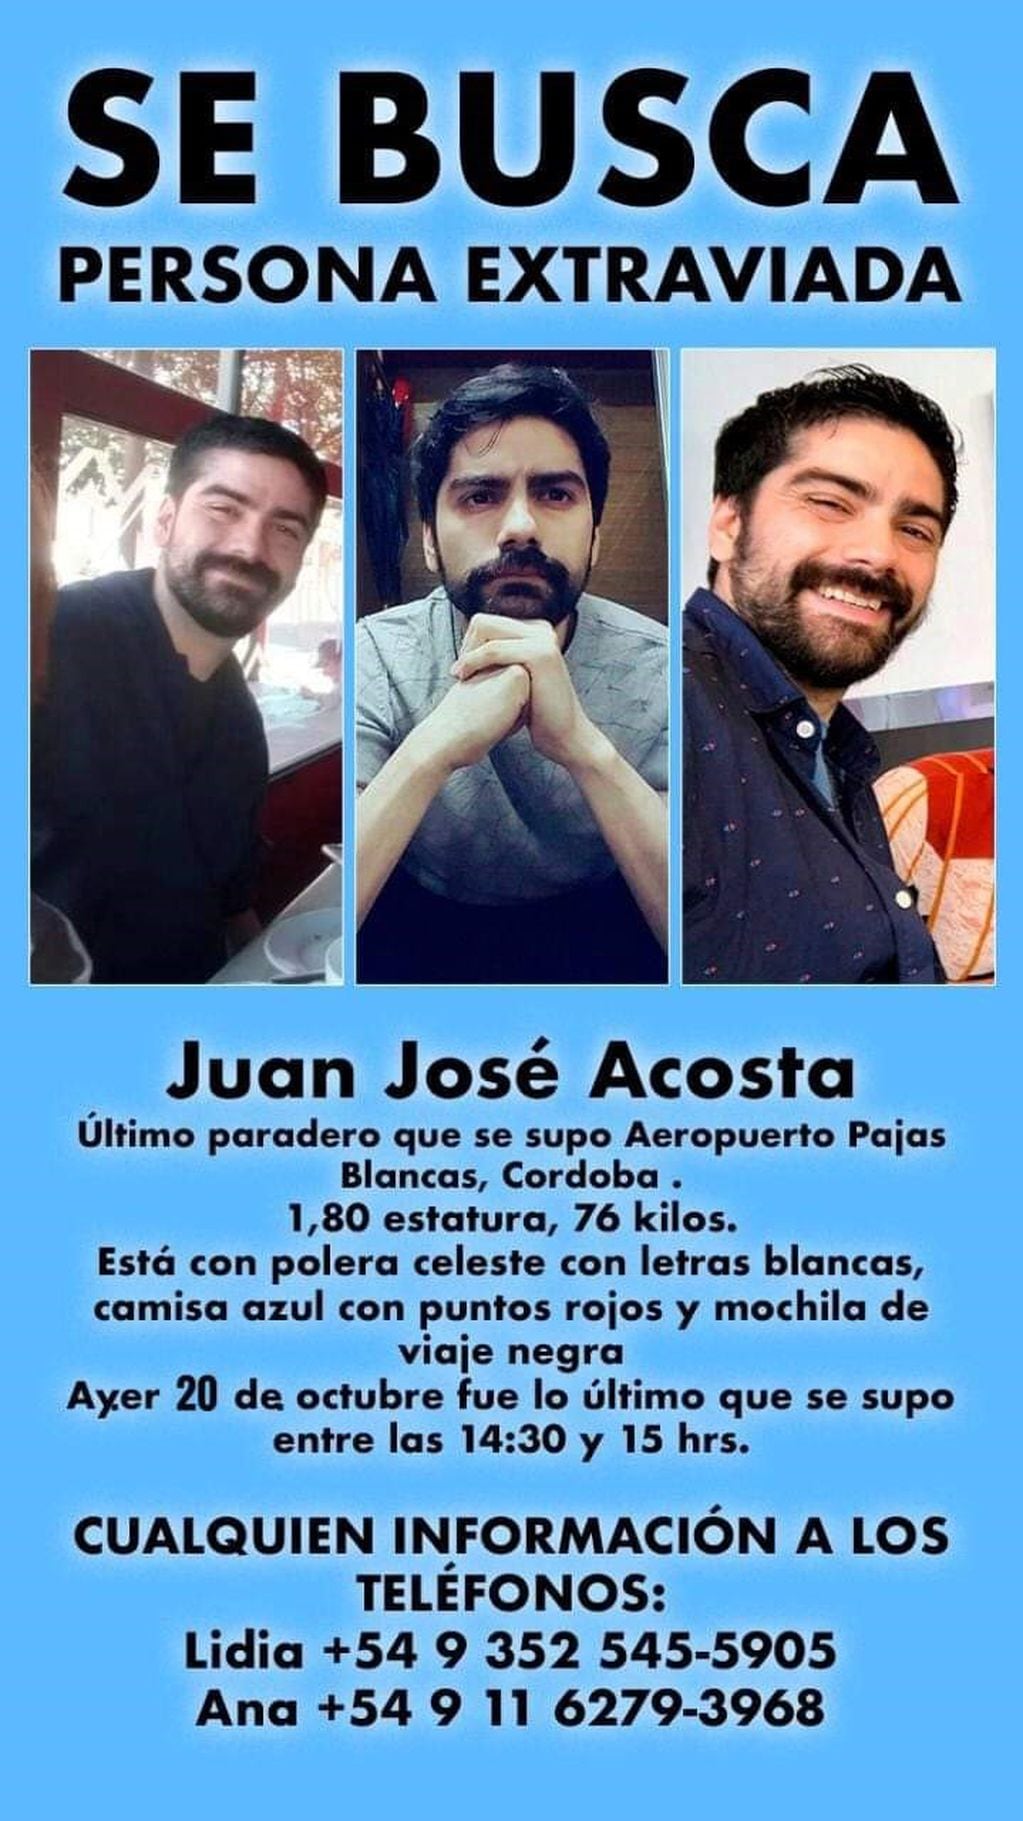 Juan José Acosta desaparecido (Redes Sociales)